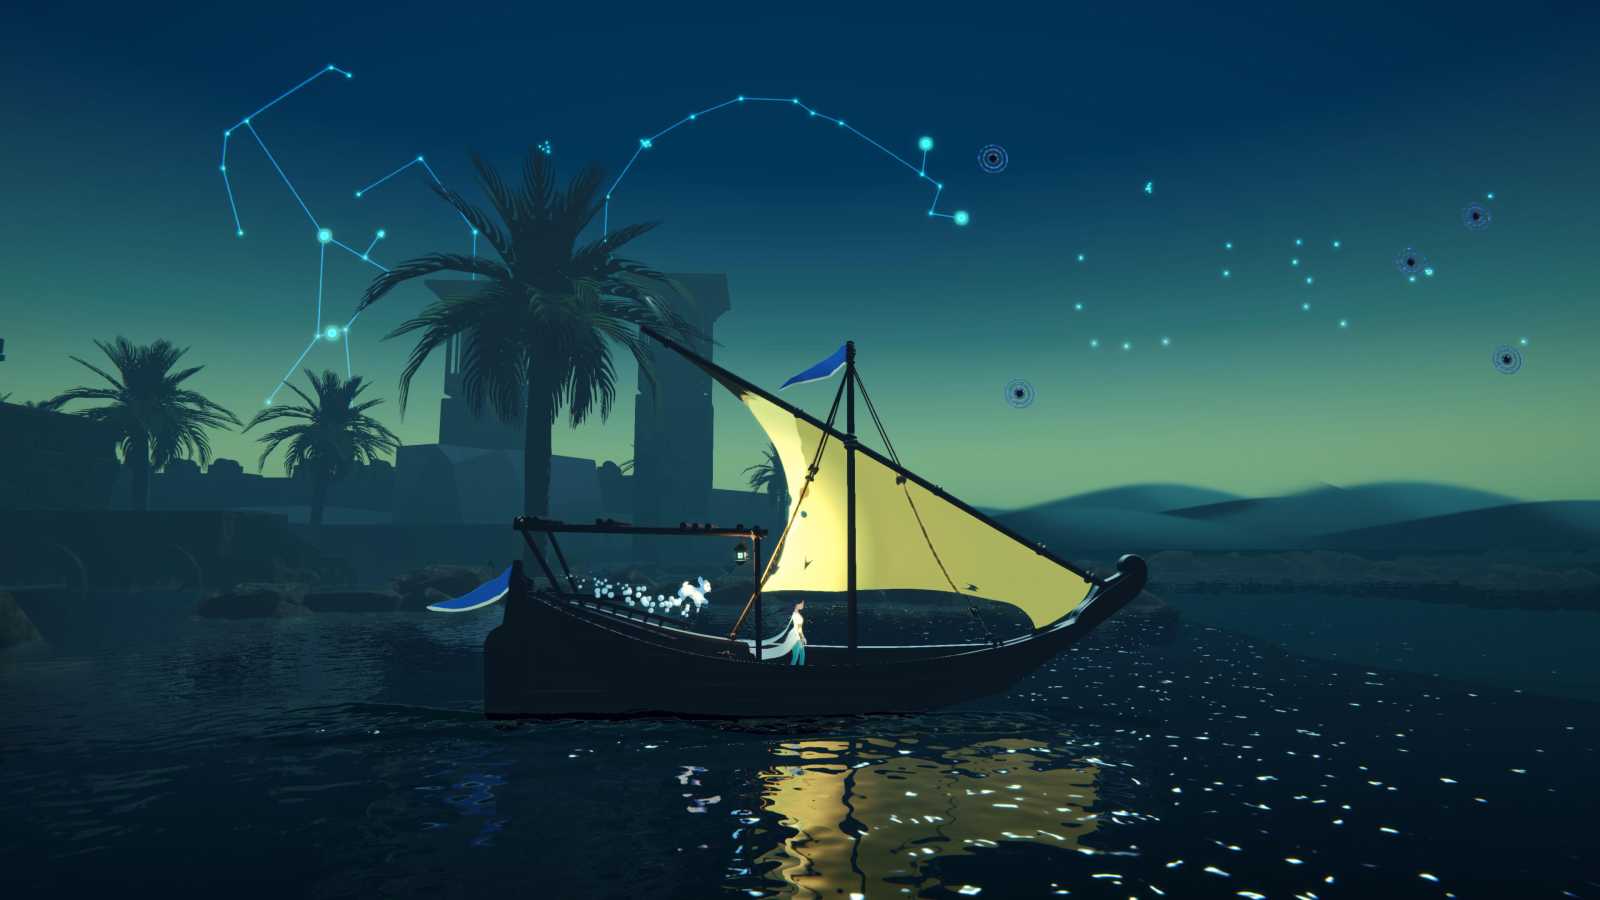 Horor na lodi a co-op akce z vesmíru. Xbox představil čtveřici indie her, které by byla škoda minout